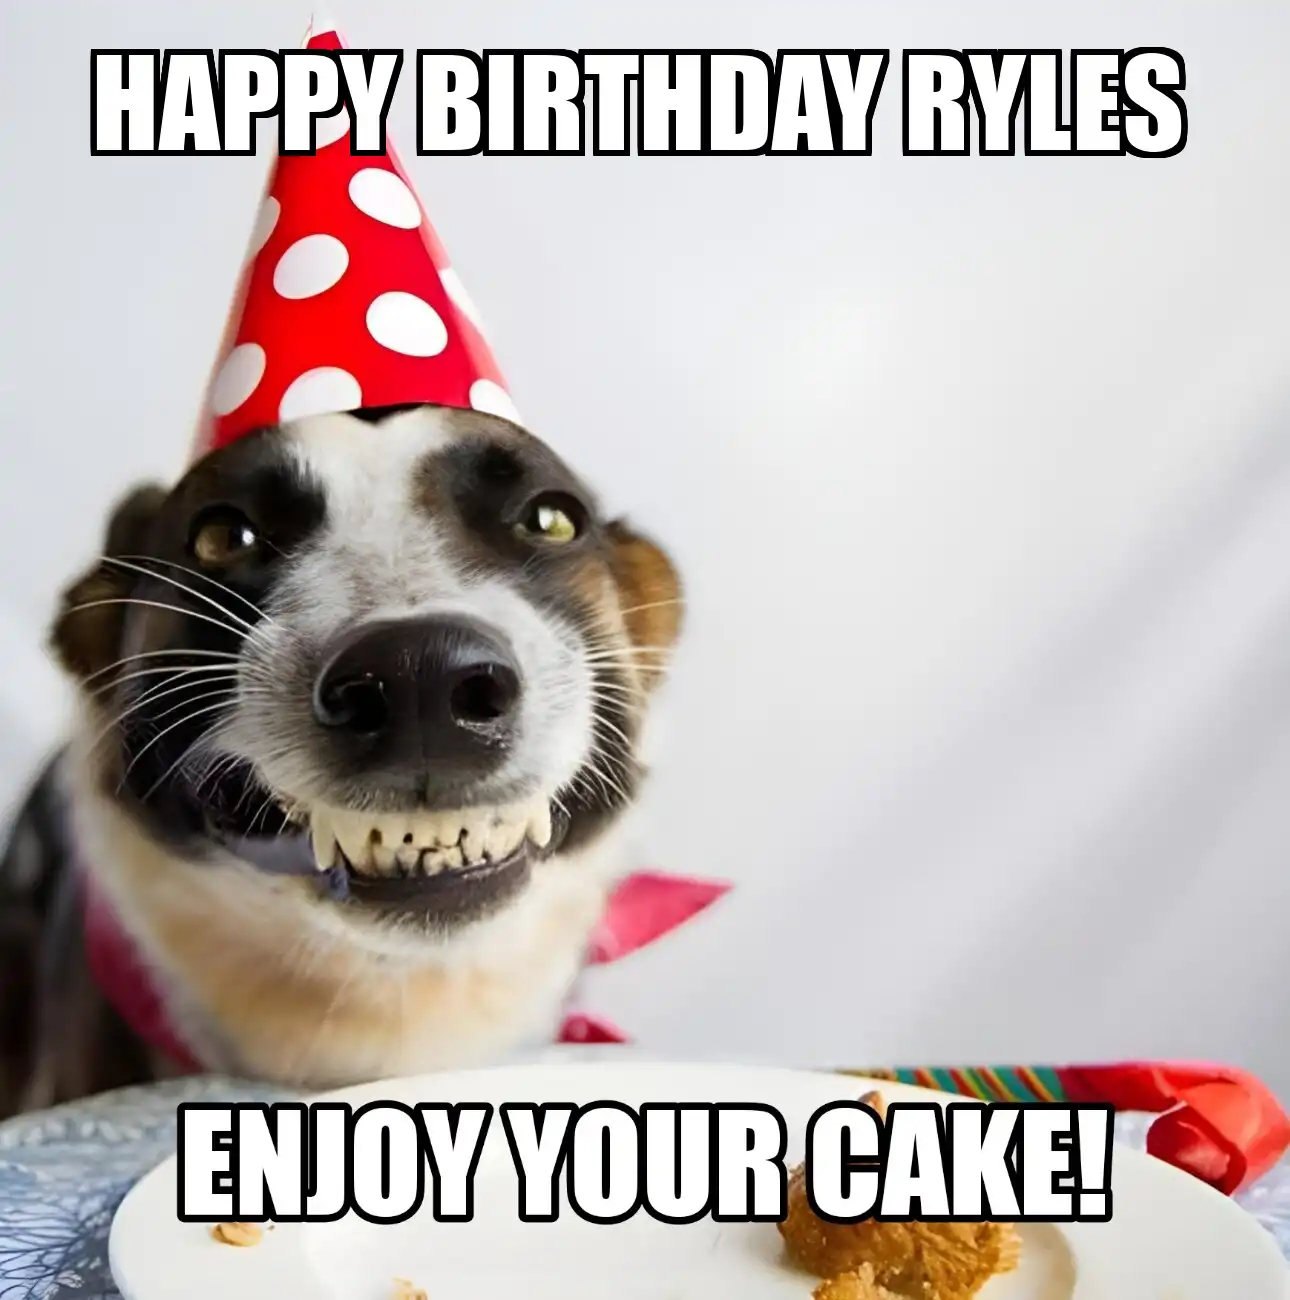 Happy Birthday Ryles Enjoy Your Cake Dog Meme